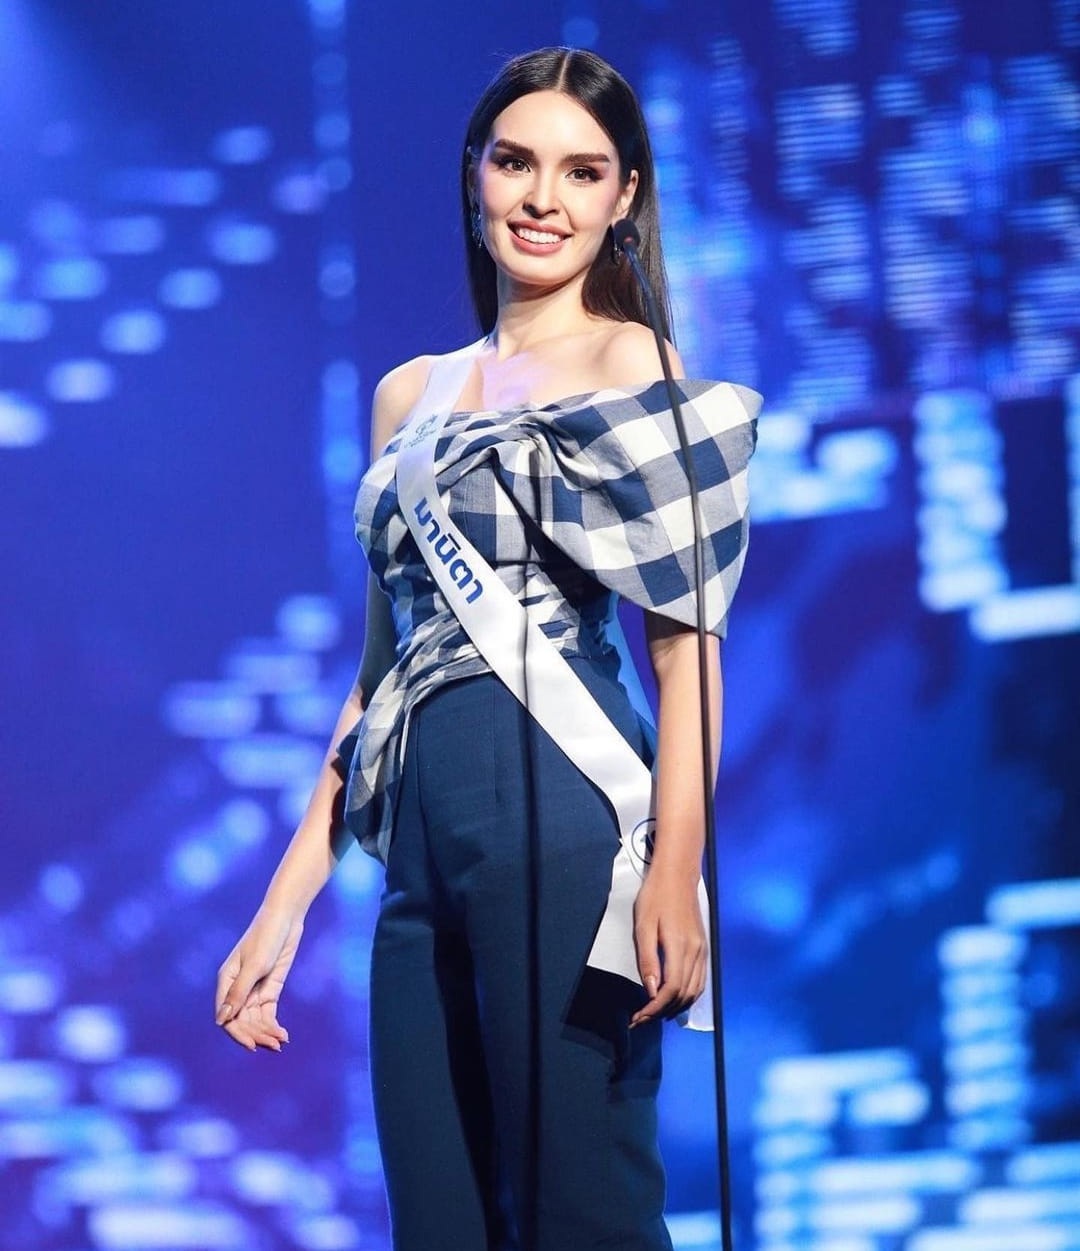 Vẻ đẹp lai cuốn hút của mỹ nhân giành ngôi vị Hoa hậu Thái Lan 2022 - Ảnh 6.